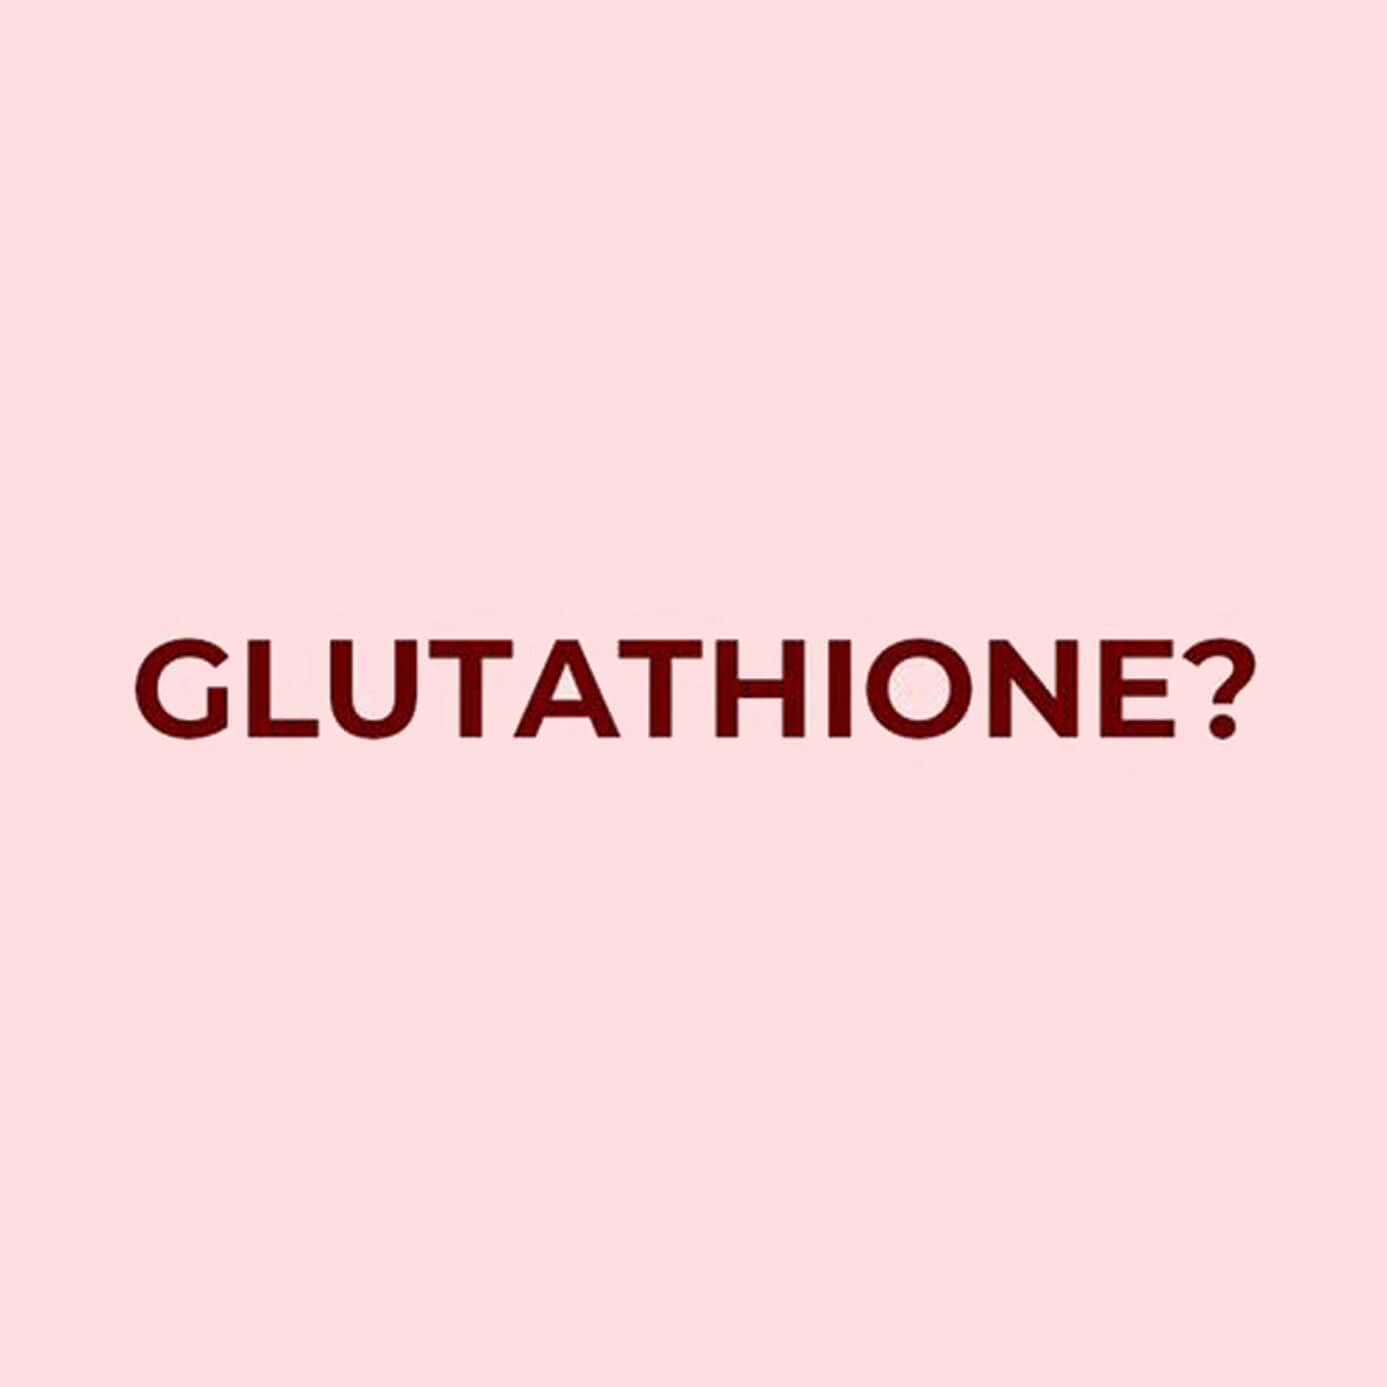 Benefits of Glutathione?